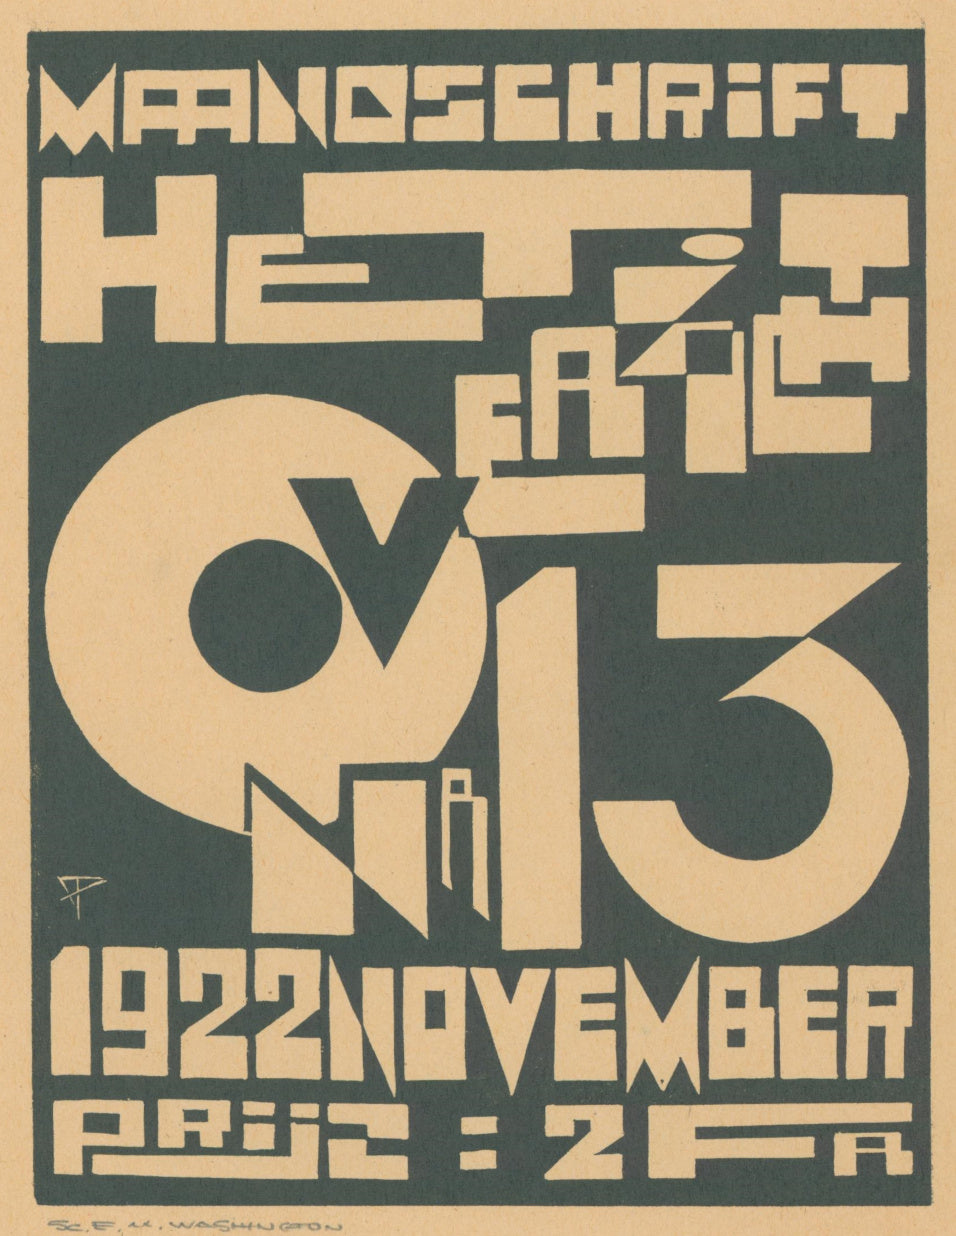 Peeters, Jozef, after “Maandschrift Het Overzicht. Nr 13, November 1922”